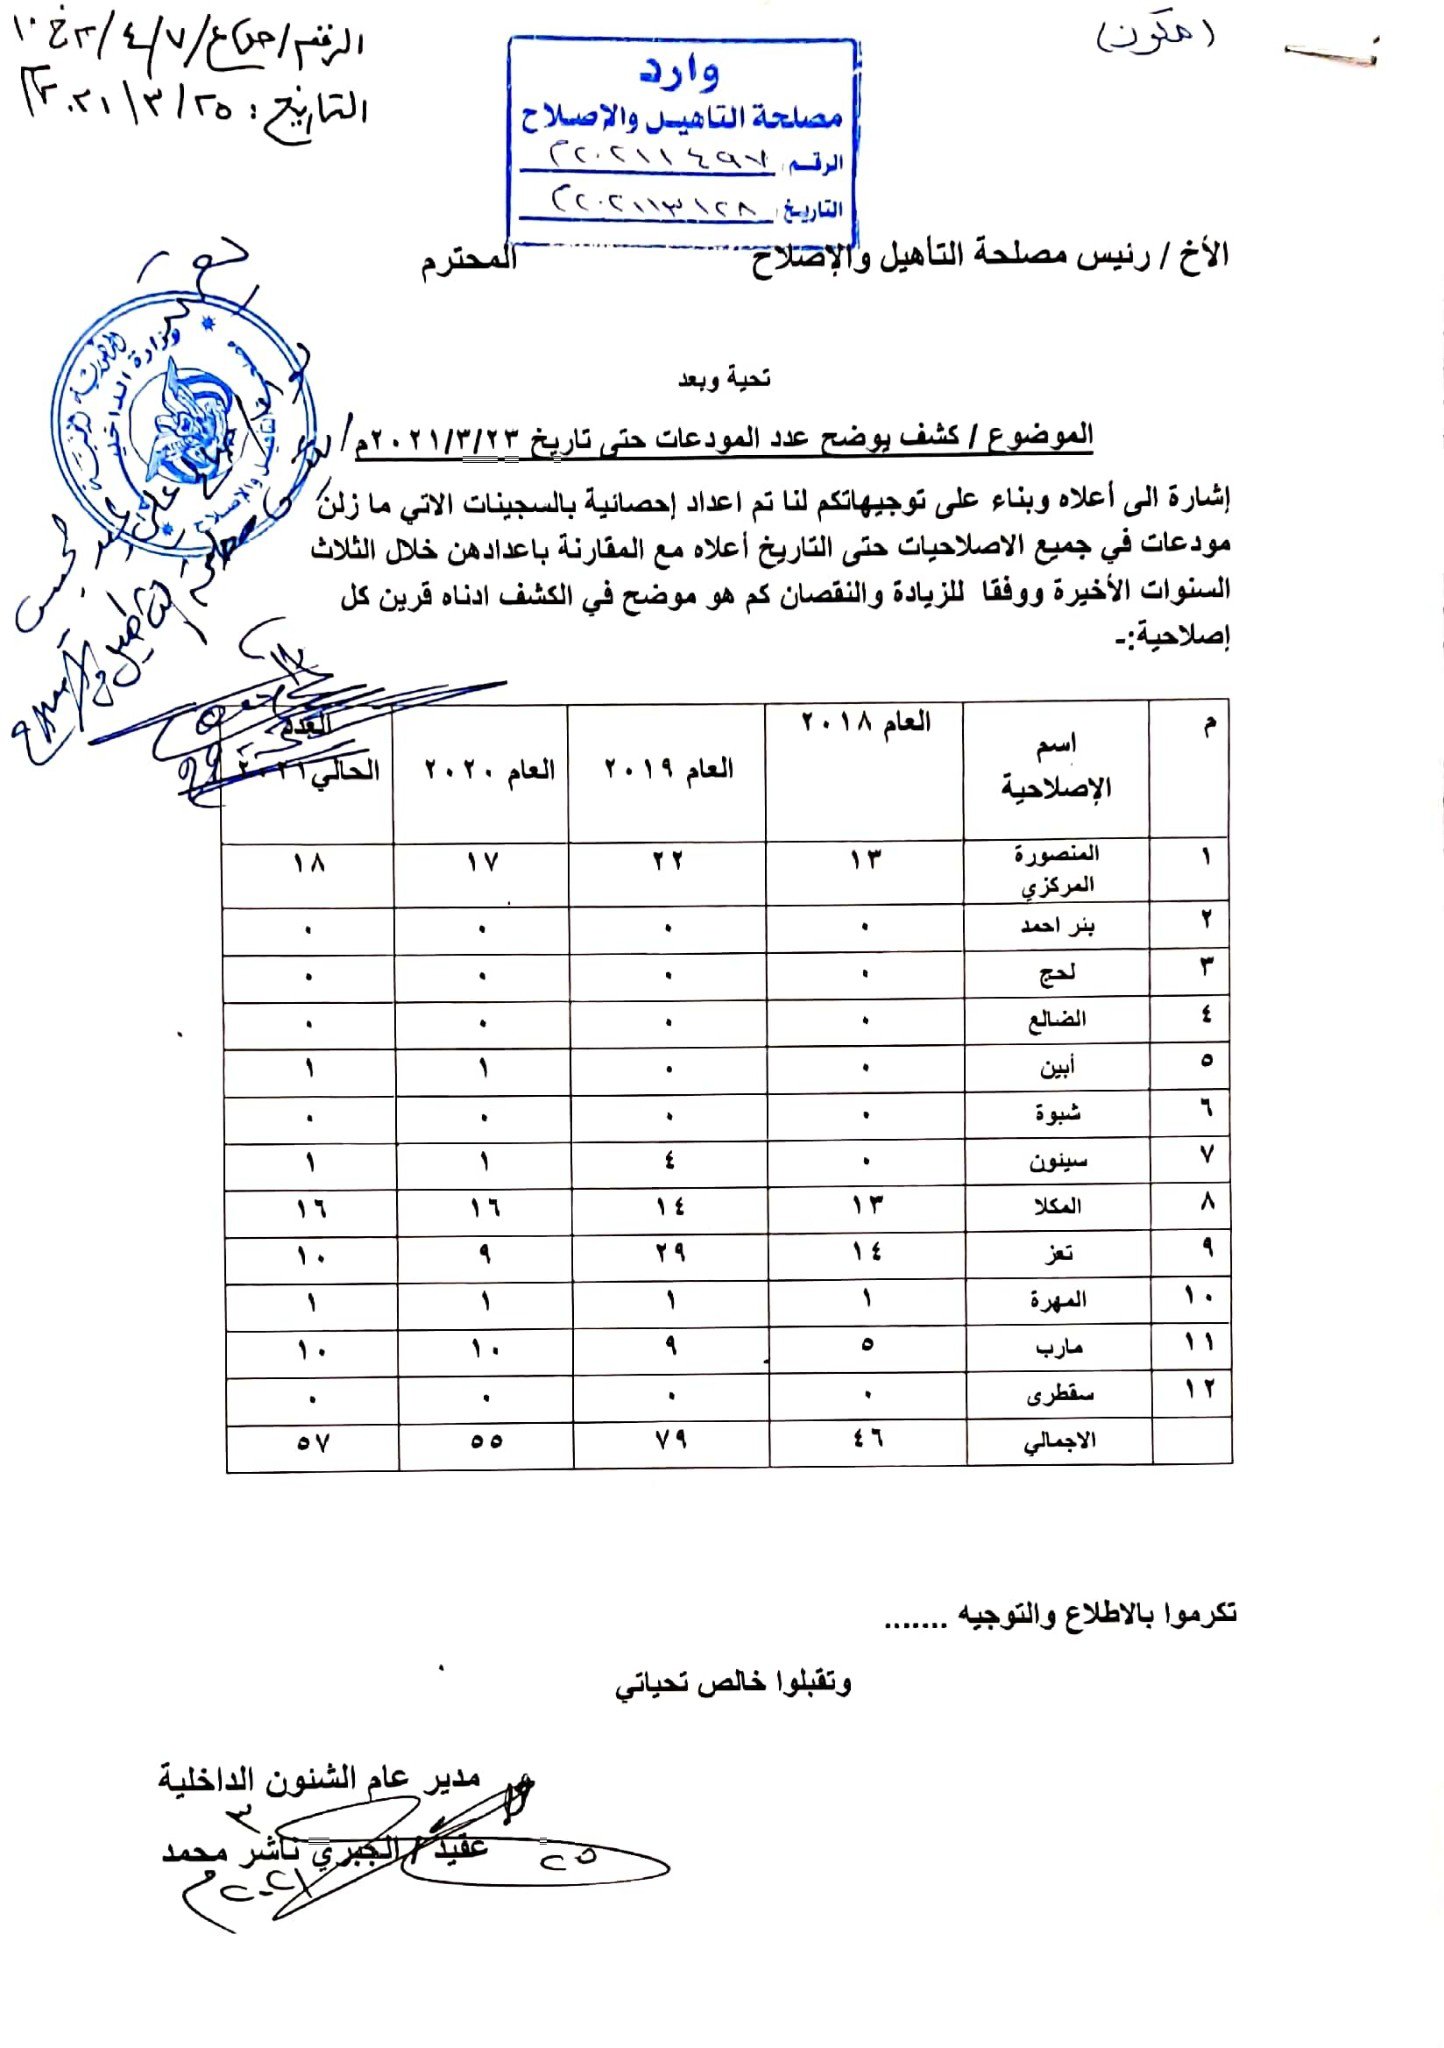 إحصائية بعدد سجينات في إصلاحيات في اليمن. Statistics on number of female prisoners in correctional facilities in Yemen.